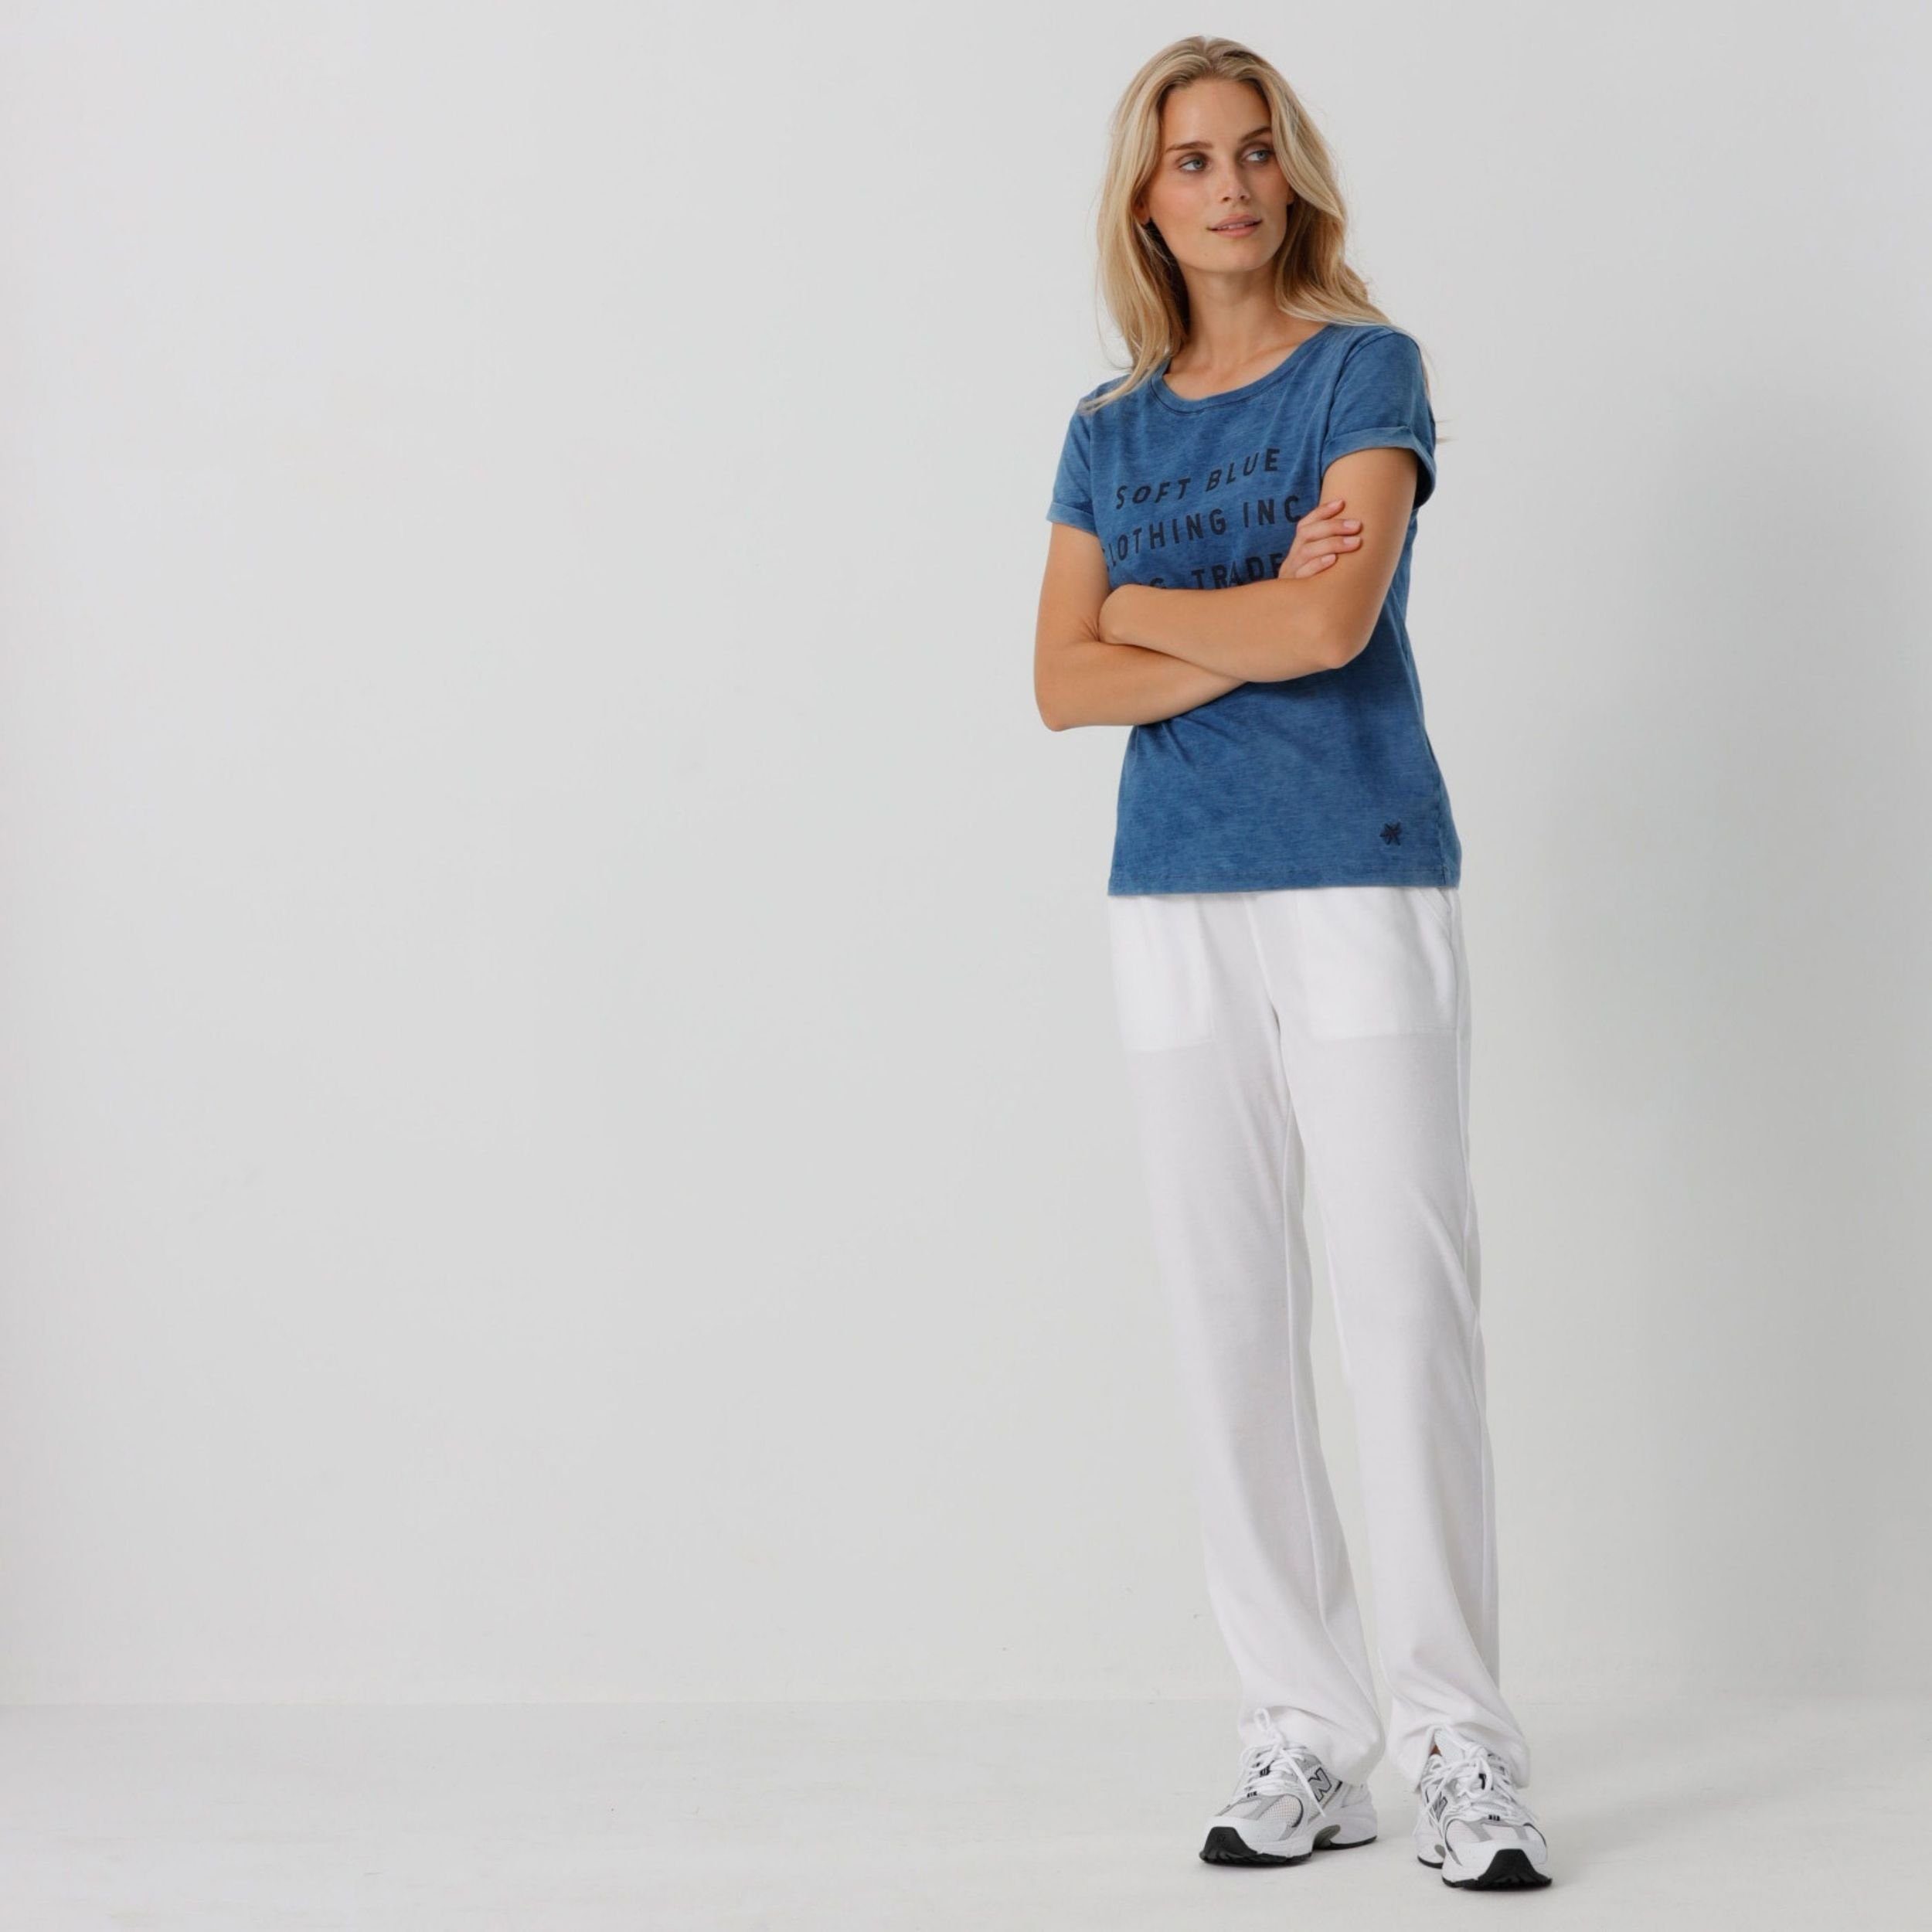 Portofino Sportswear Bund Weiß oder Samthose in elastischem Weiche Blue mit Jogger Melon Nicki